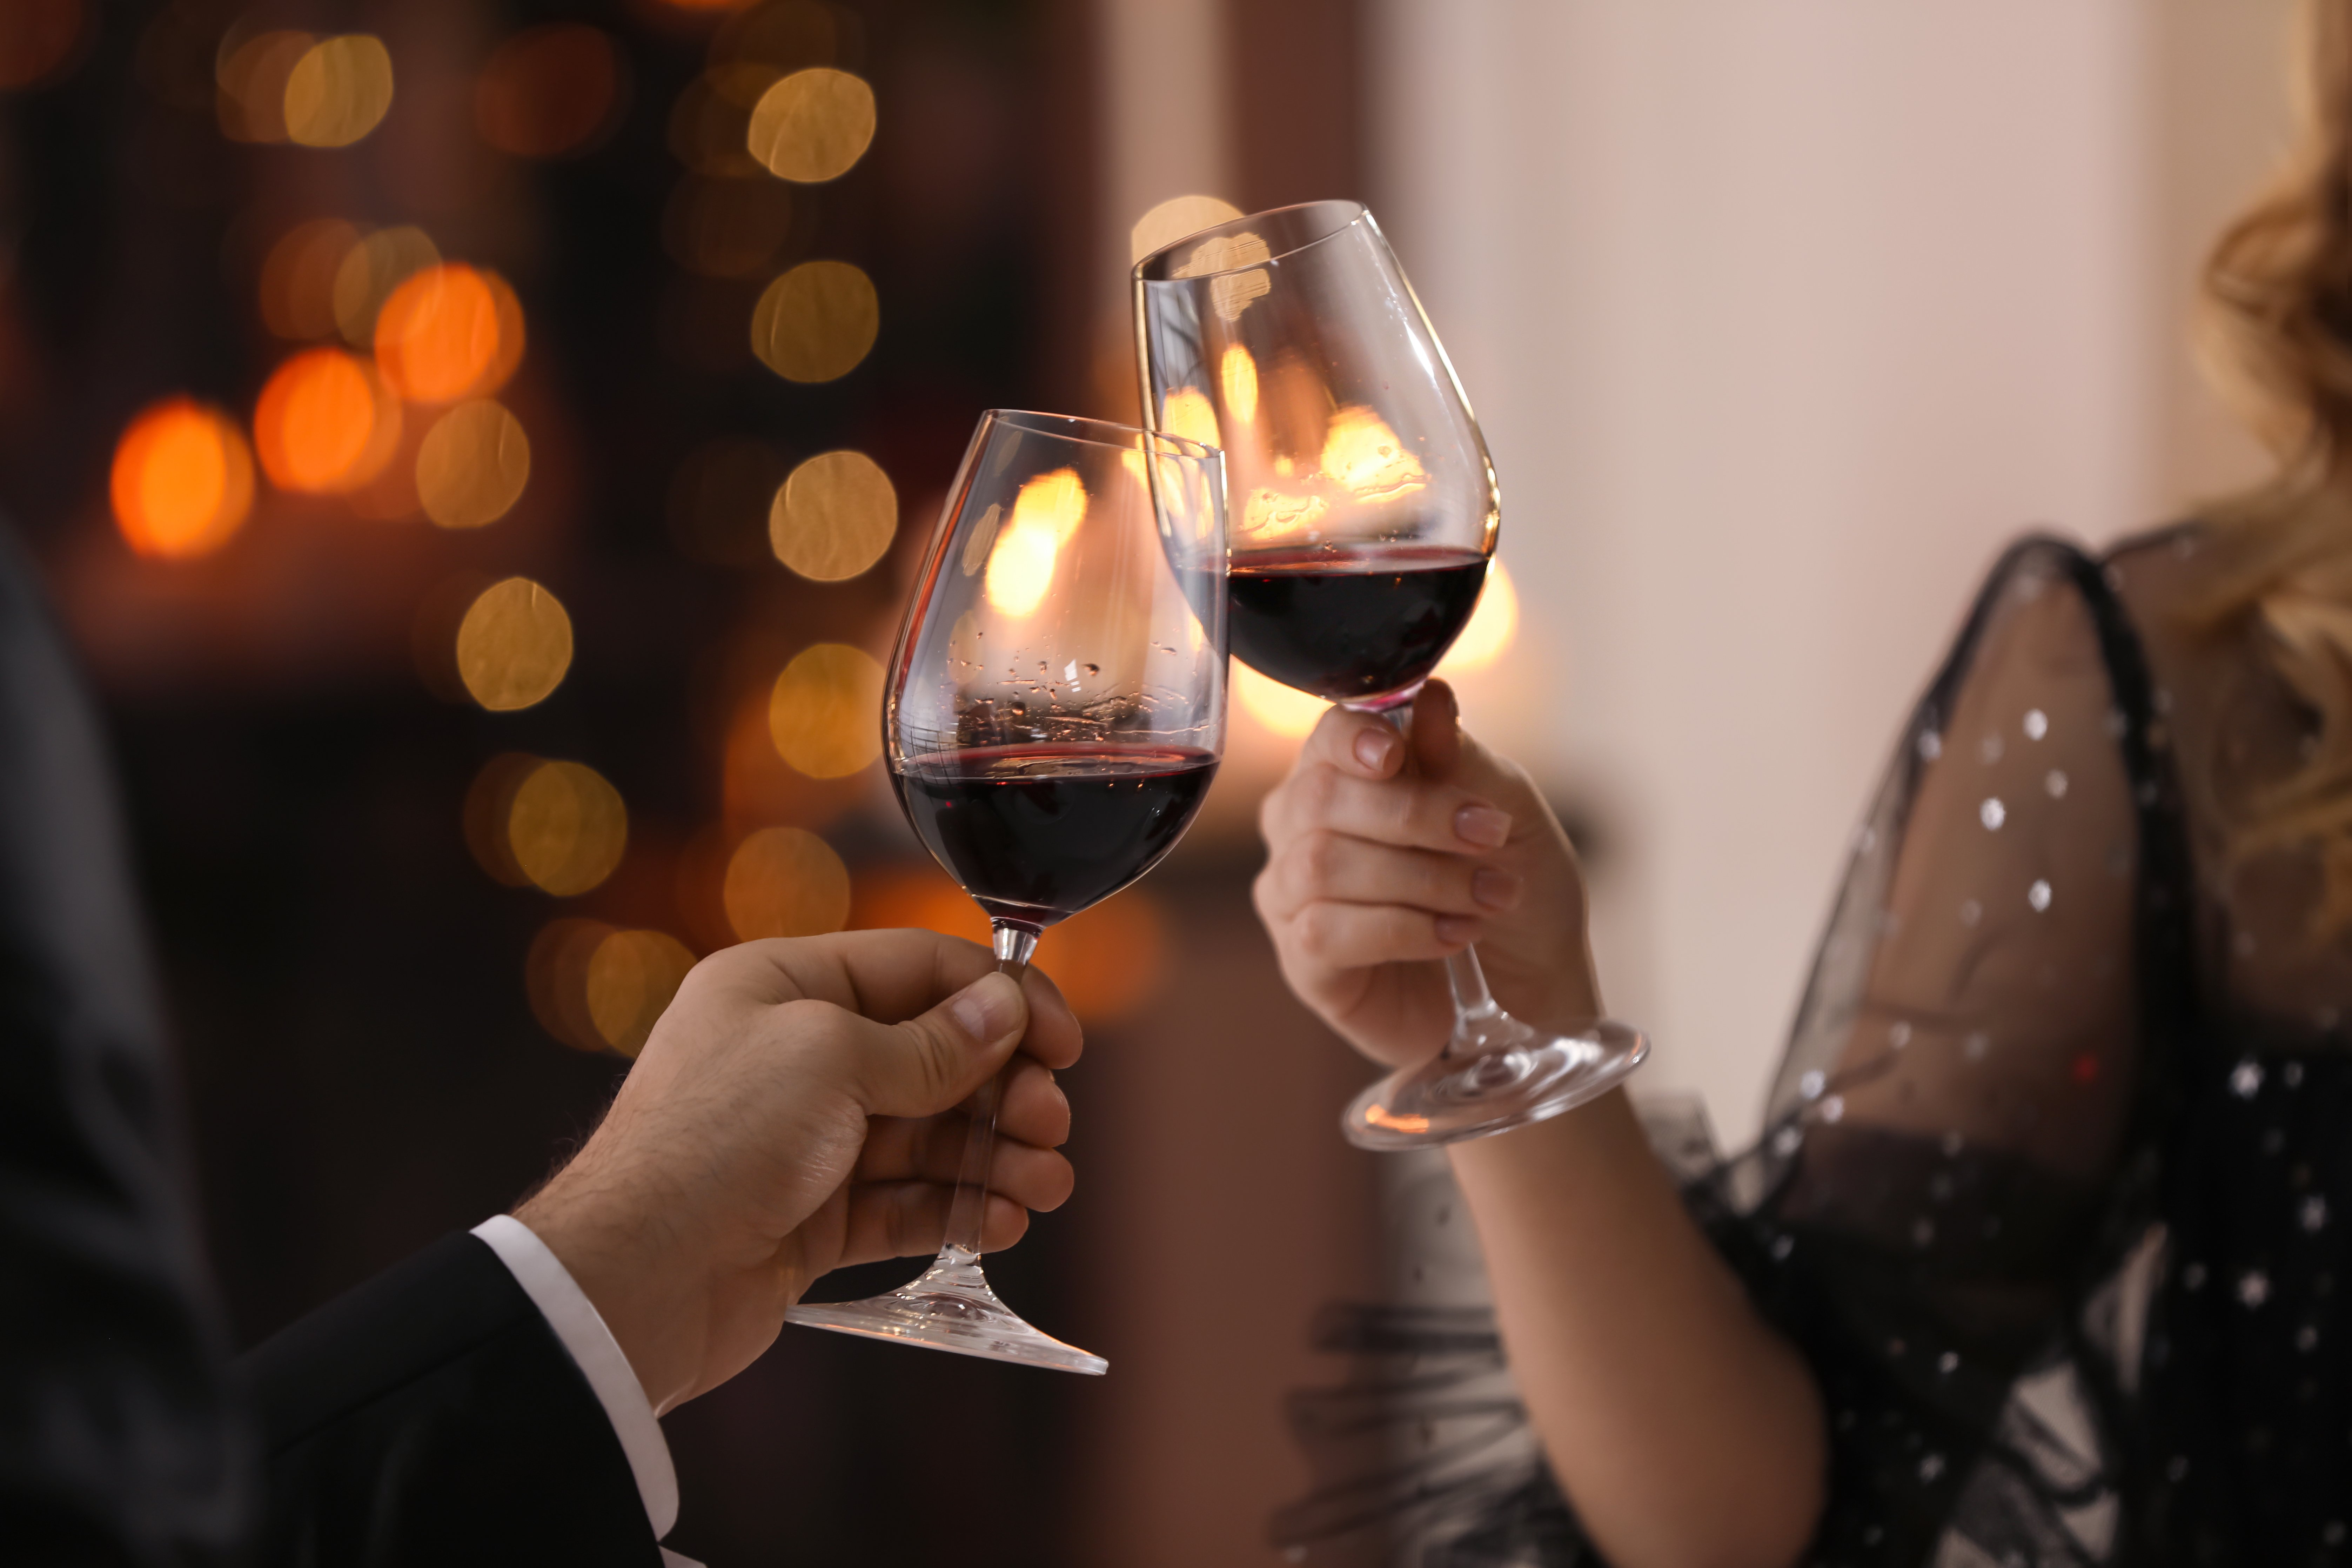 Persona brindando con vino. | Foto: Shutterstock